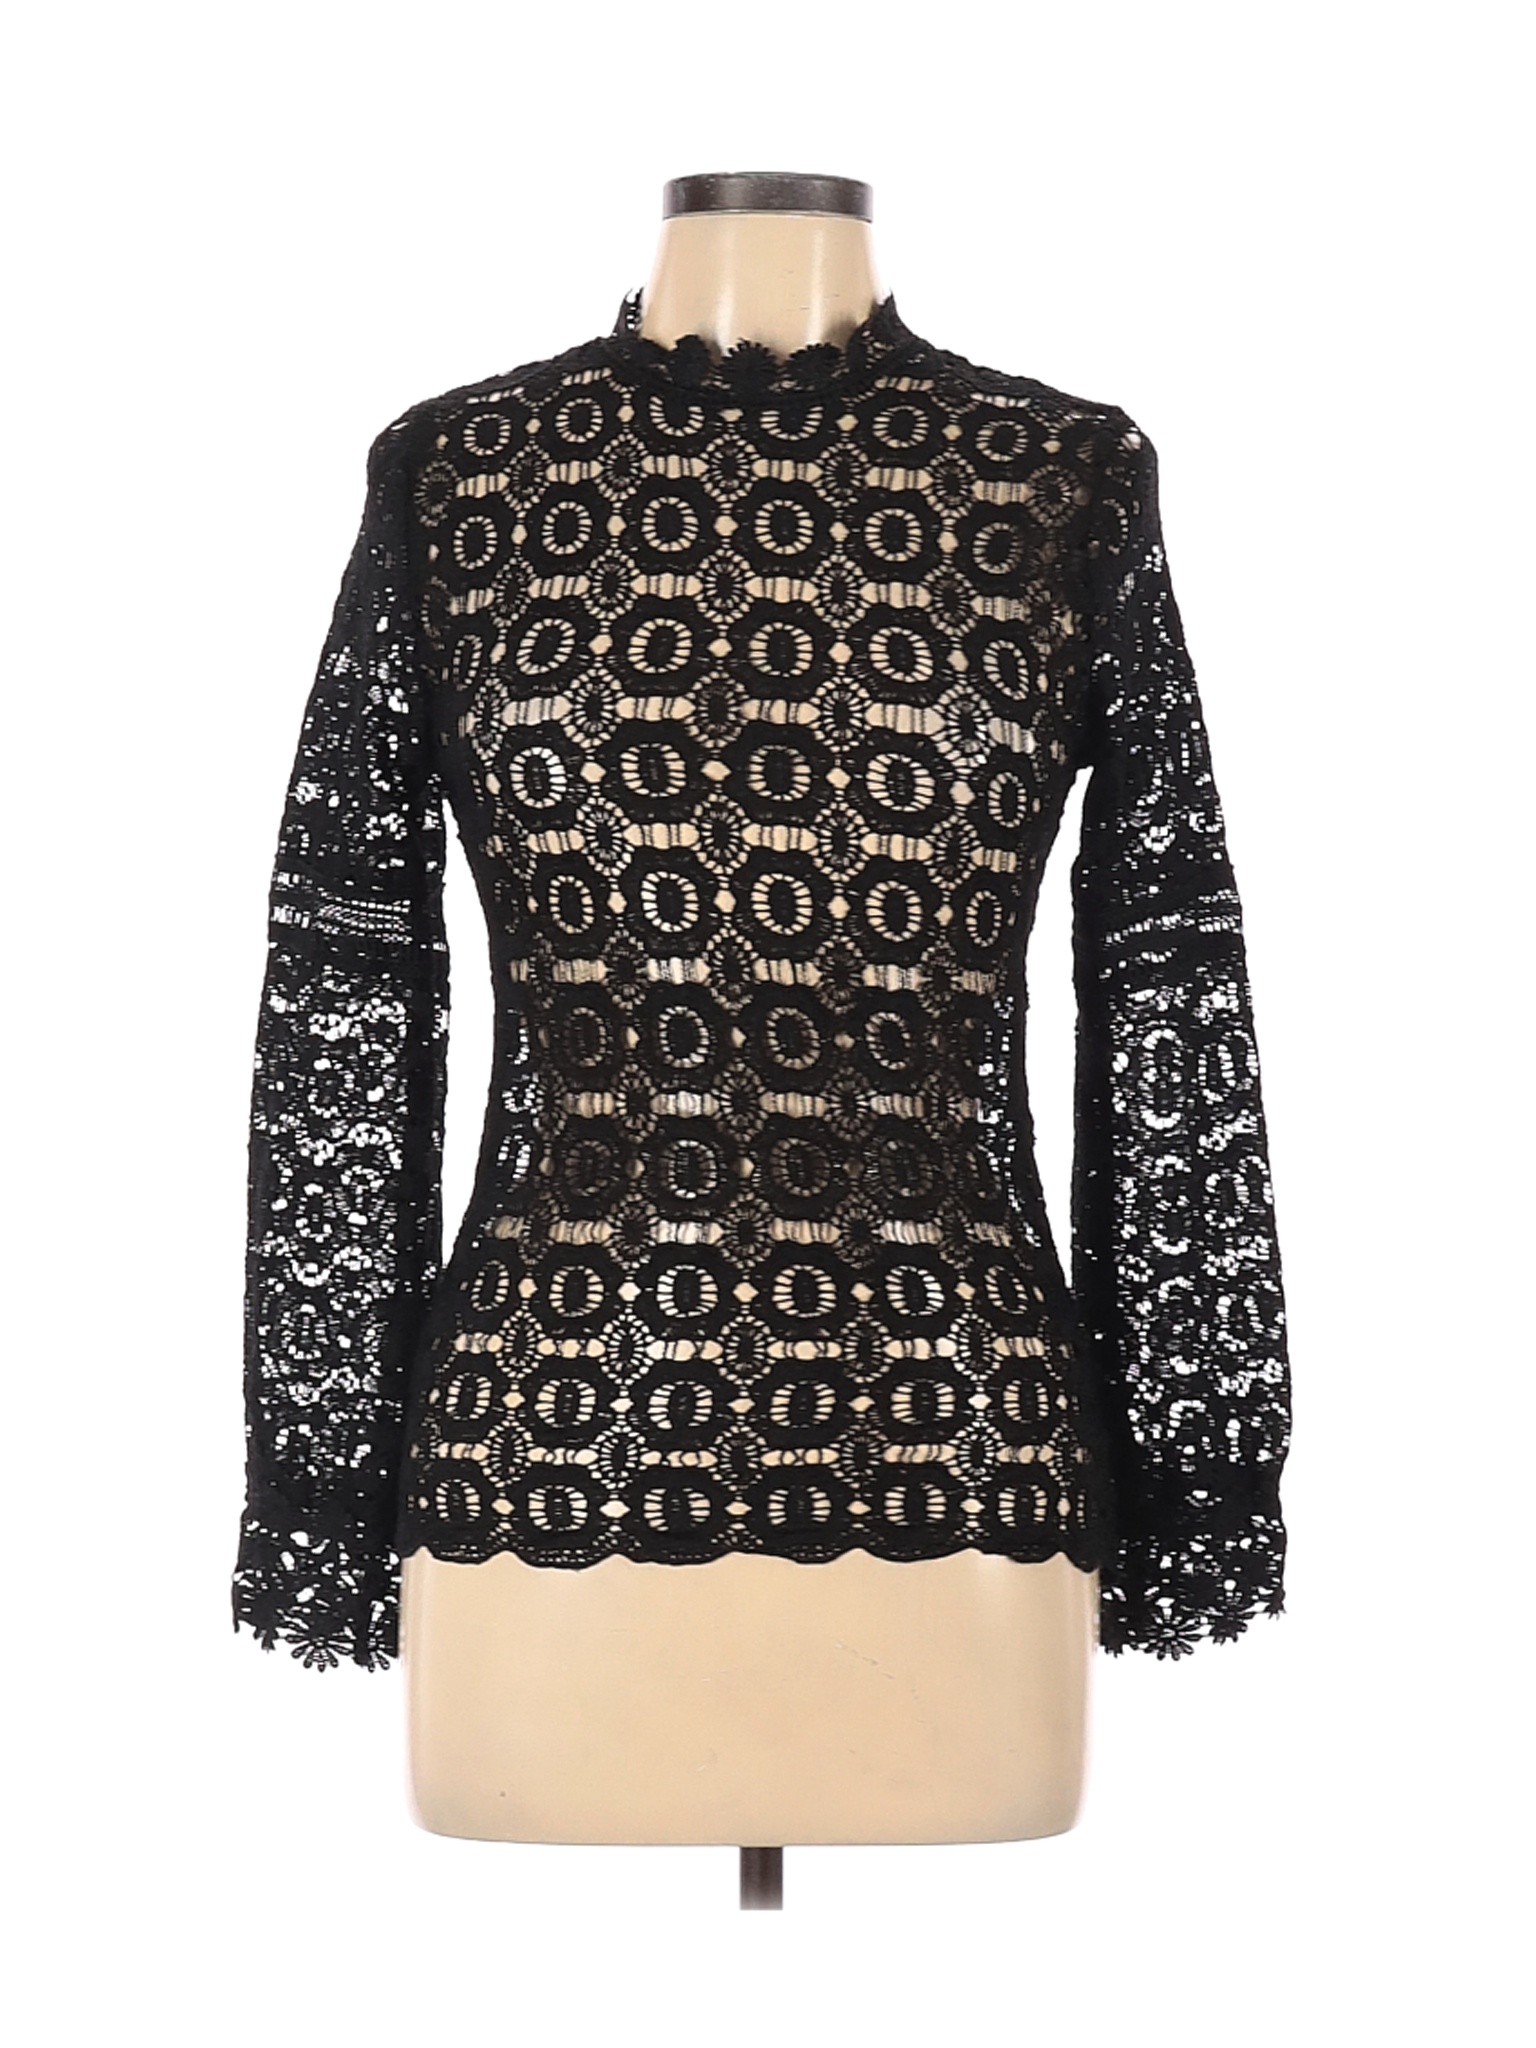 Fashion & Best Women Black Long Sleeve Blouse L | eBay